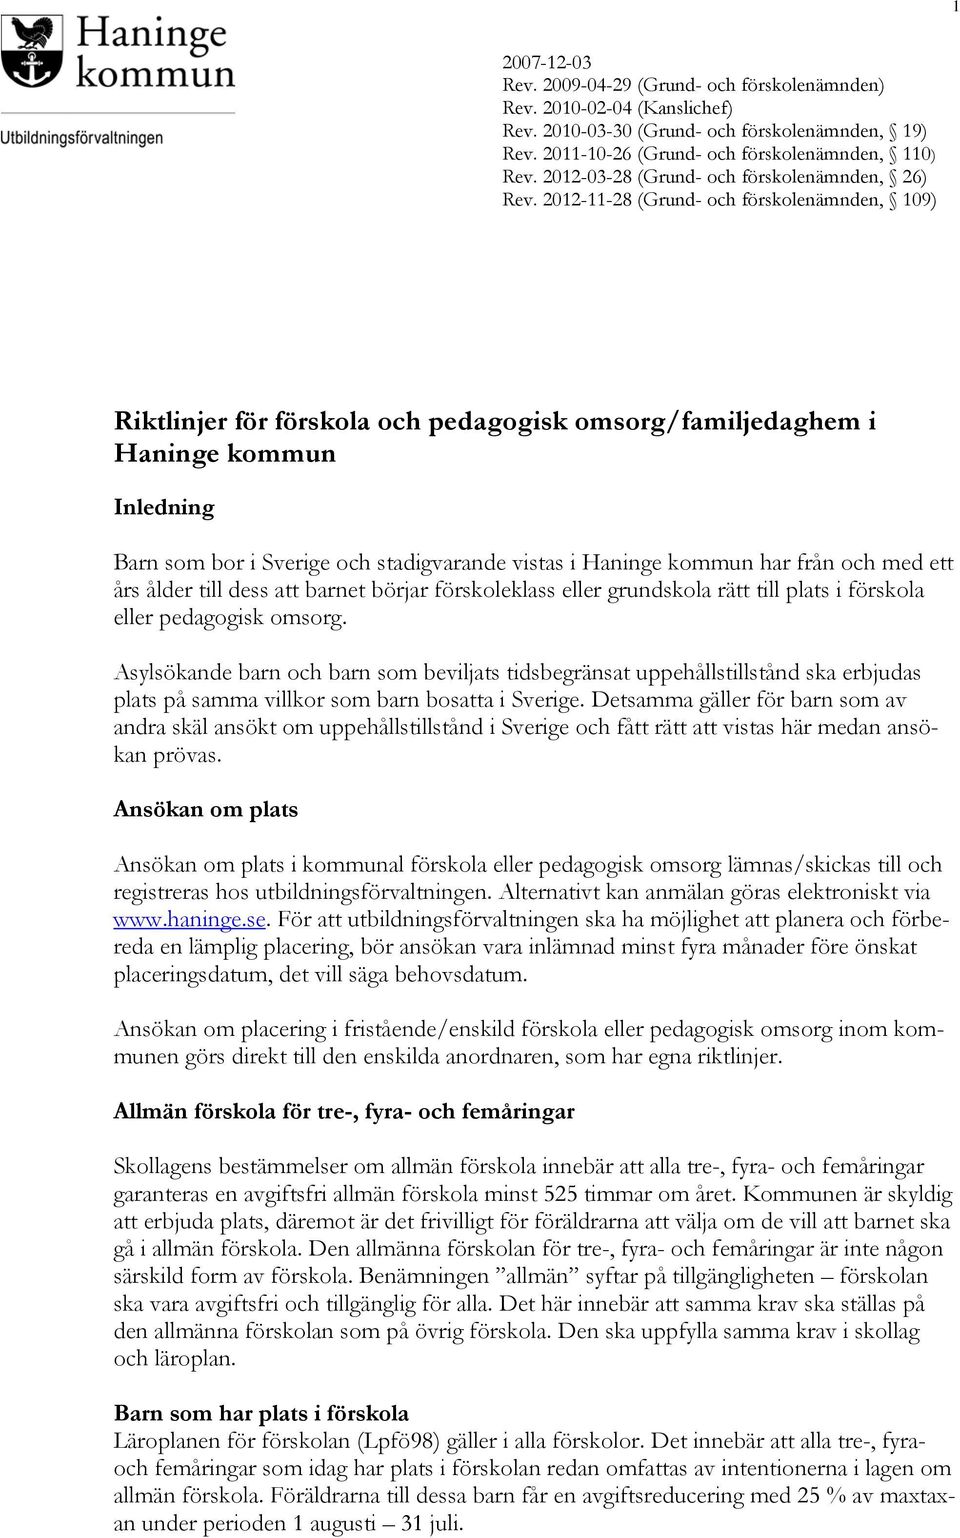 2012-11-28 (Grund- och förskolenämnden, 109) Riktlinjer för förskola och pedagogisk omsorg/familjedaghem i Haninge kommun Inledning Barn som bor i Sverige och stadigvarande vistas i Haninge kommun